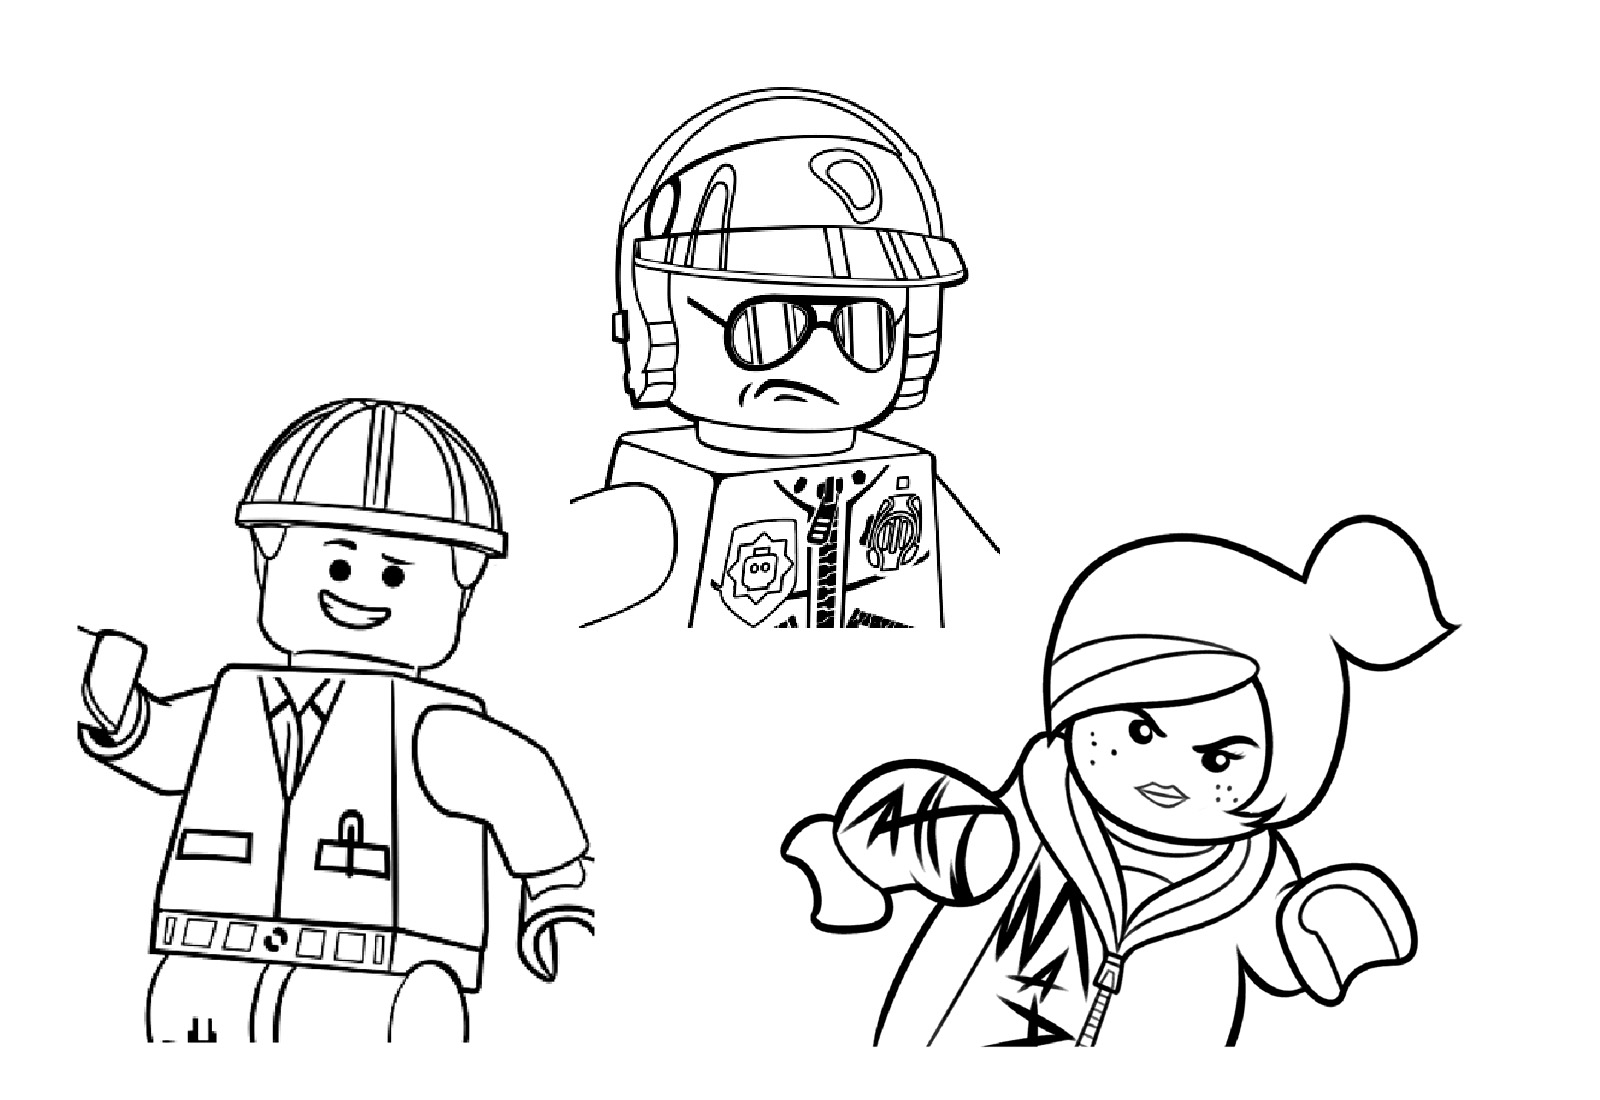 Montage de 3 personnages du Film Lego, sur fond blanc